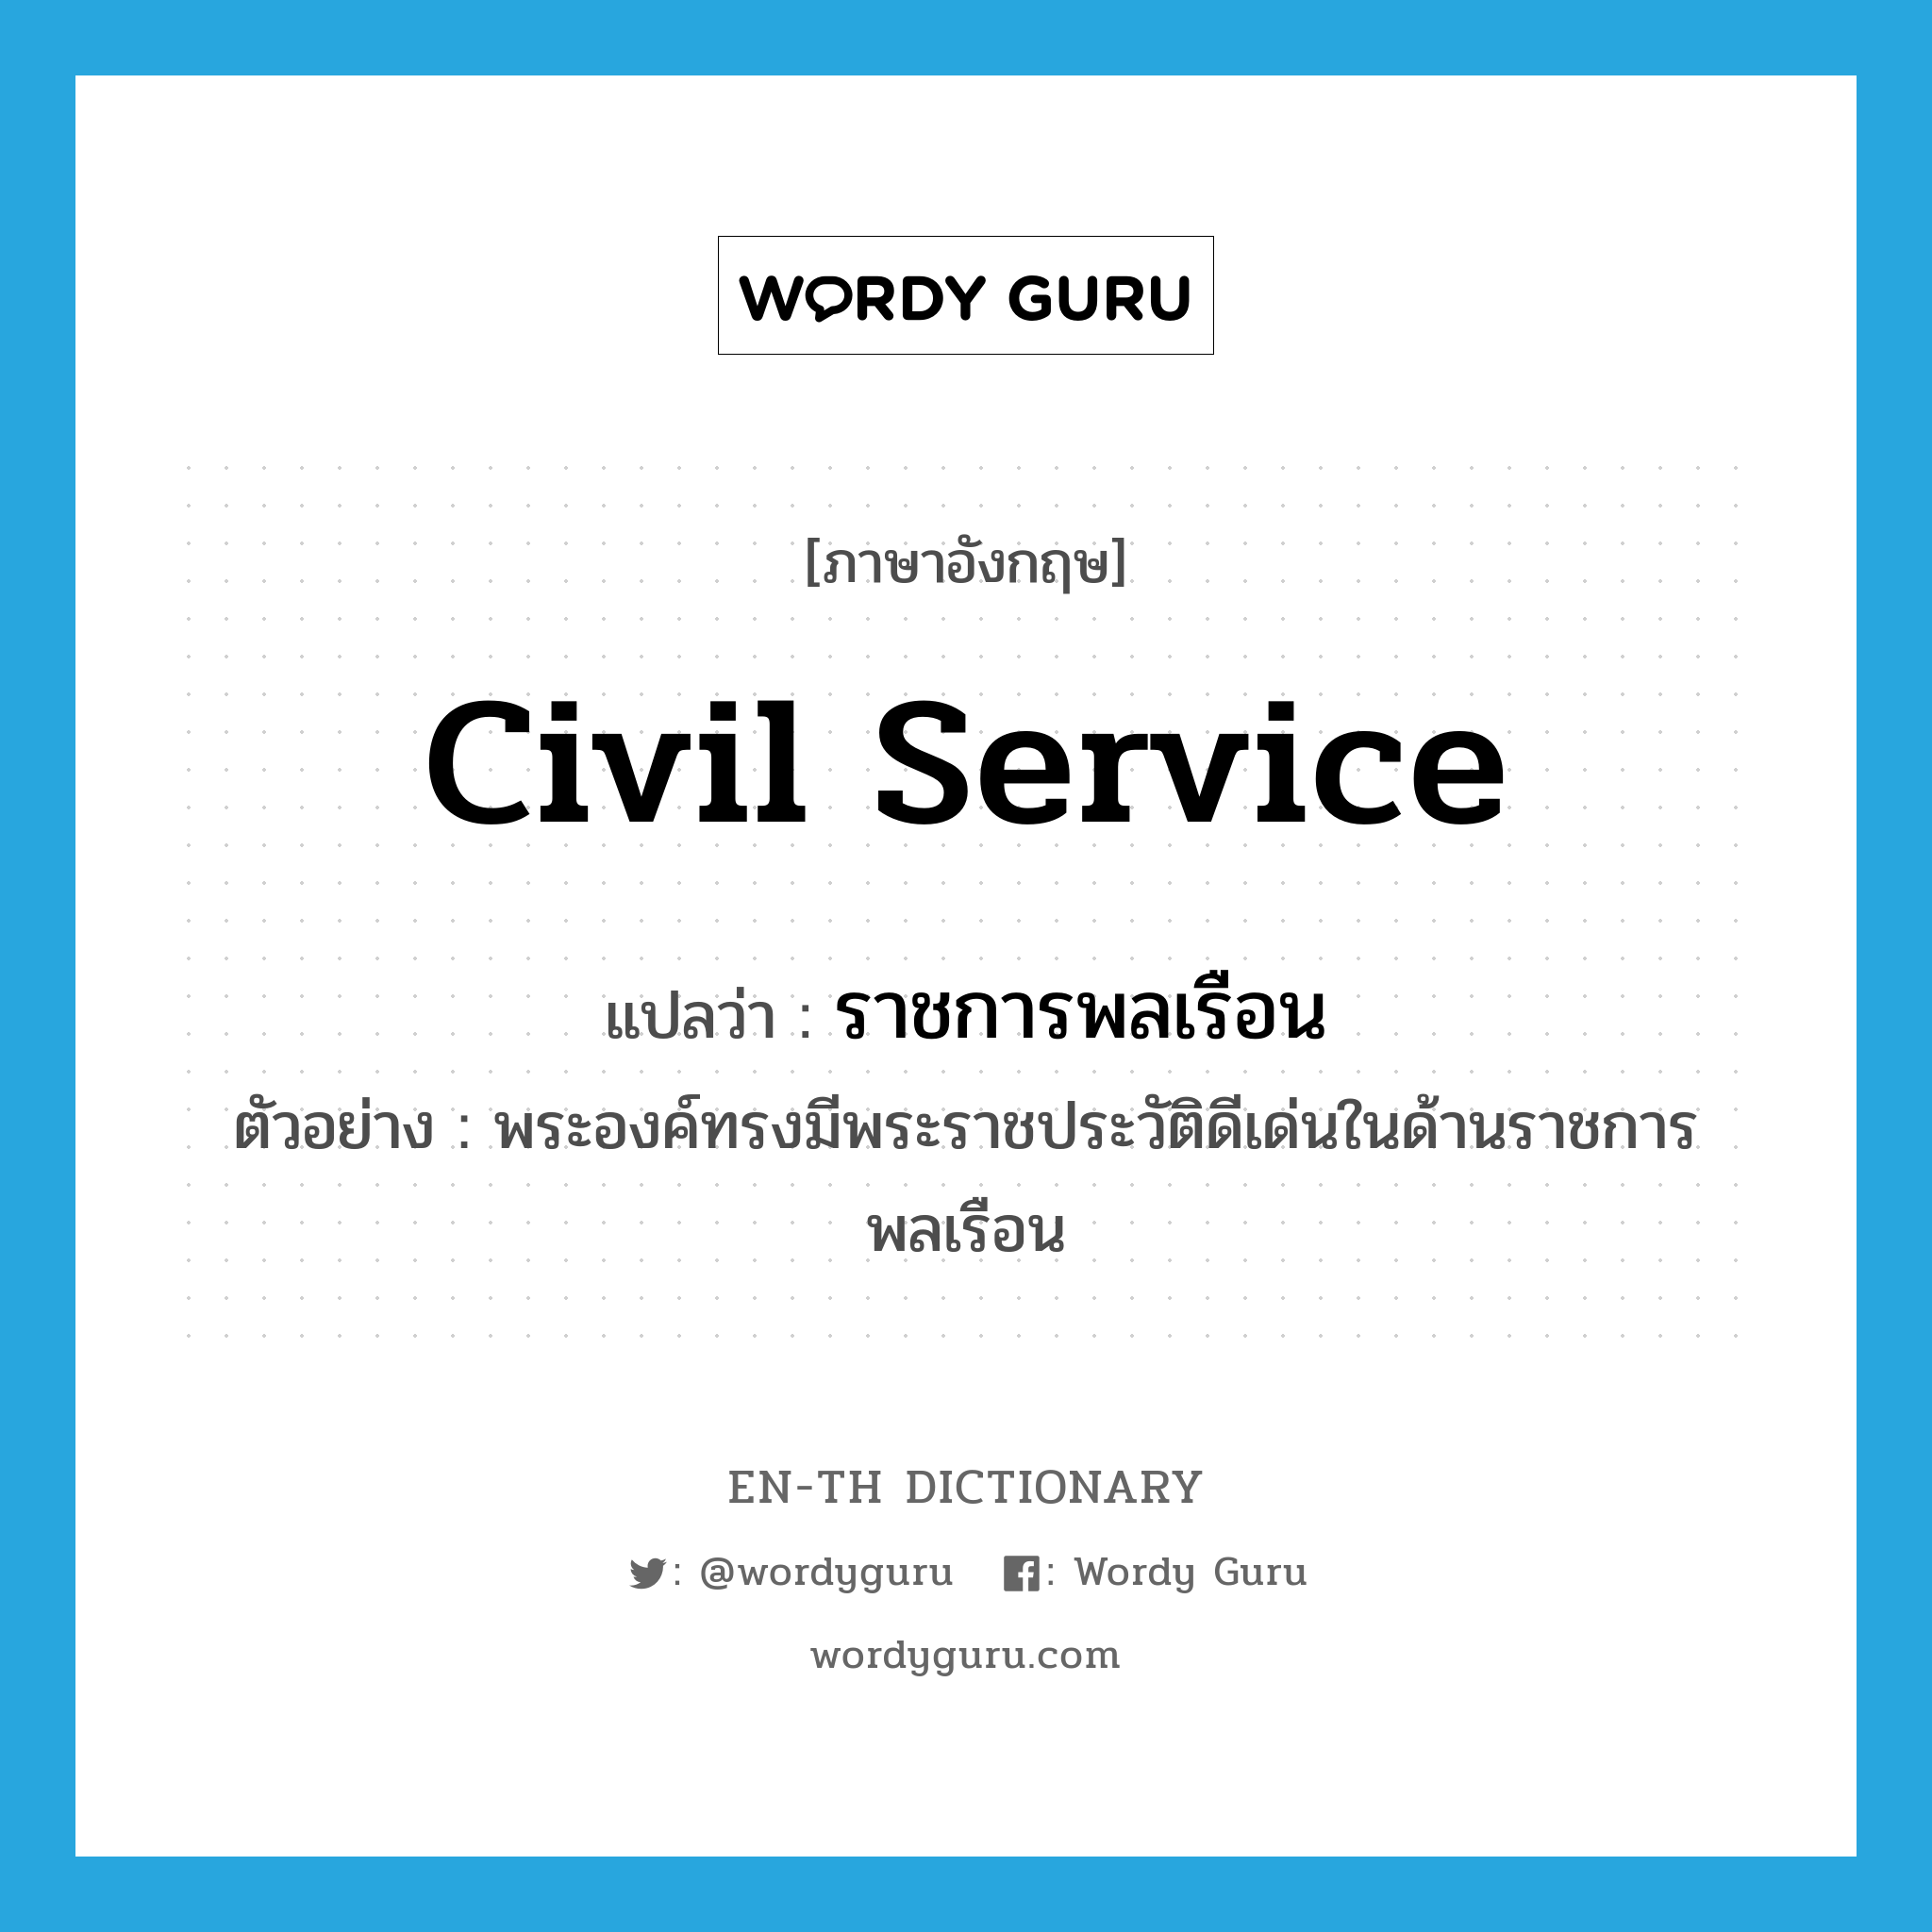 civil service แปลว่า?, คำศัพท์ภาษาอังกฤษ civil service แปลว่า ราชการพลเรือน ประเภท N ตัวอย่าง พระองค์ทรงมีพระราชประวัติดีเด่นในด้านราชการพลเรือน หมวด N